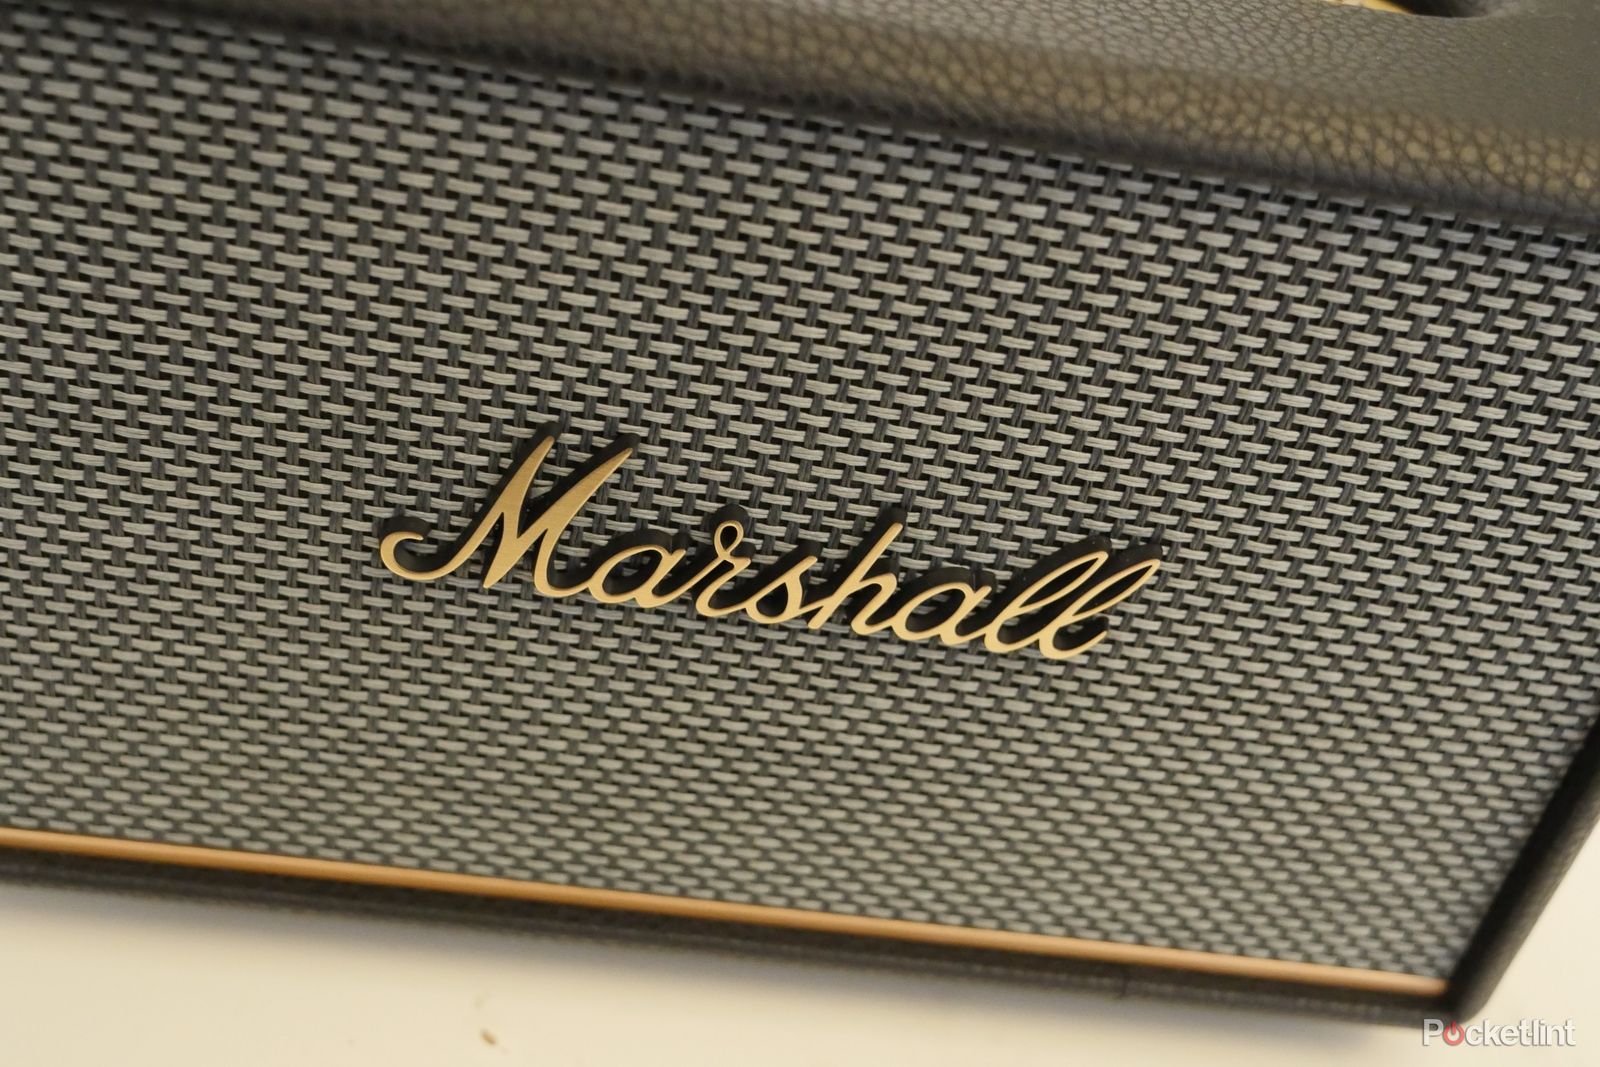 Marshall Acton III Cream Vintage Bluetooth Speaker + Reviews